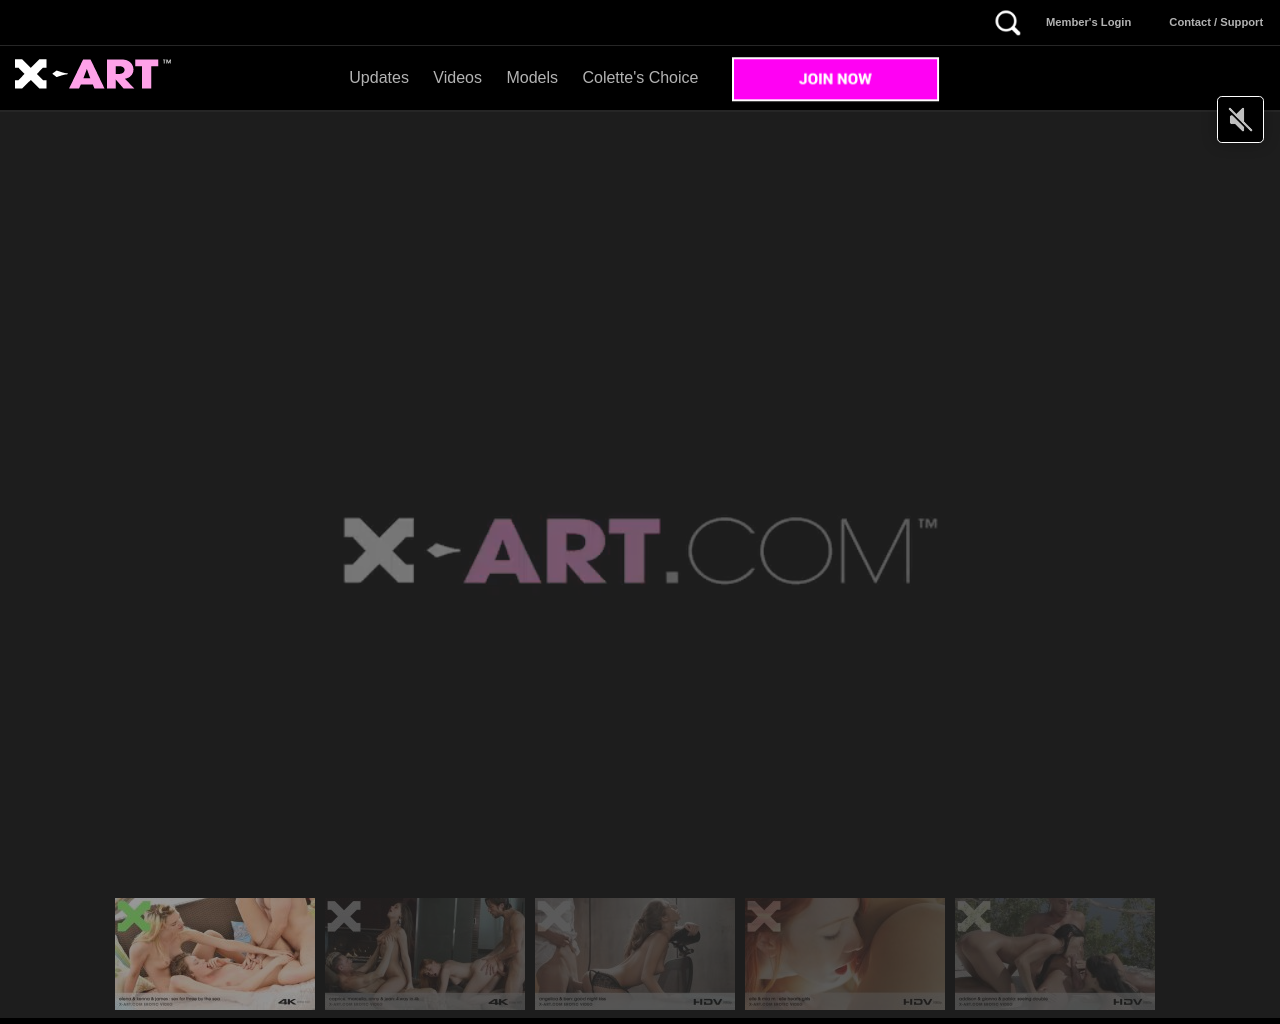 x-art.com